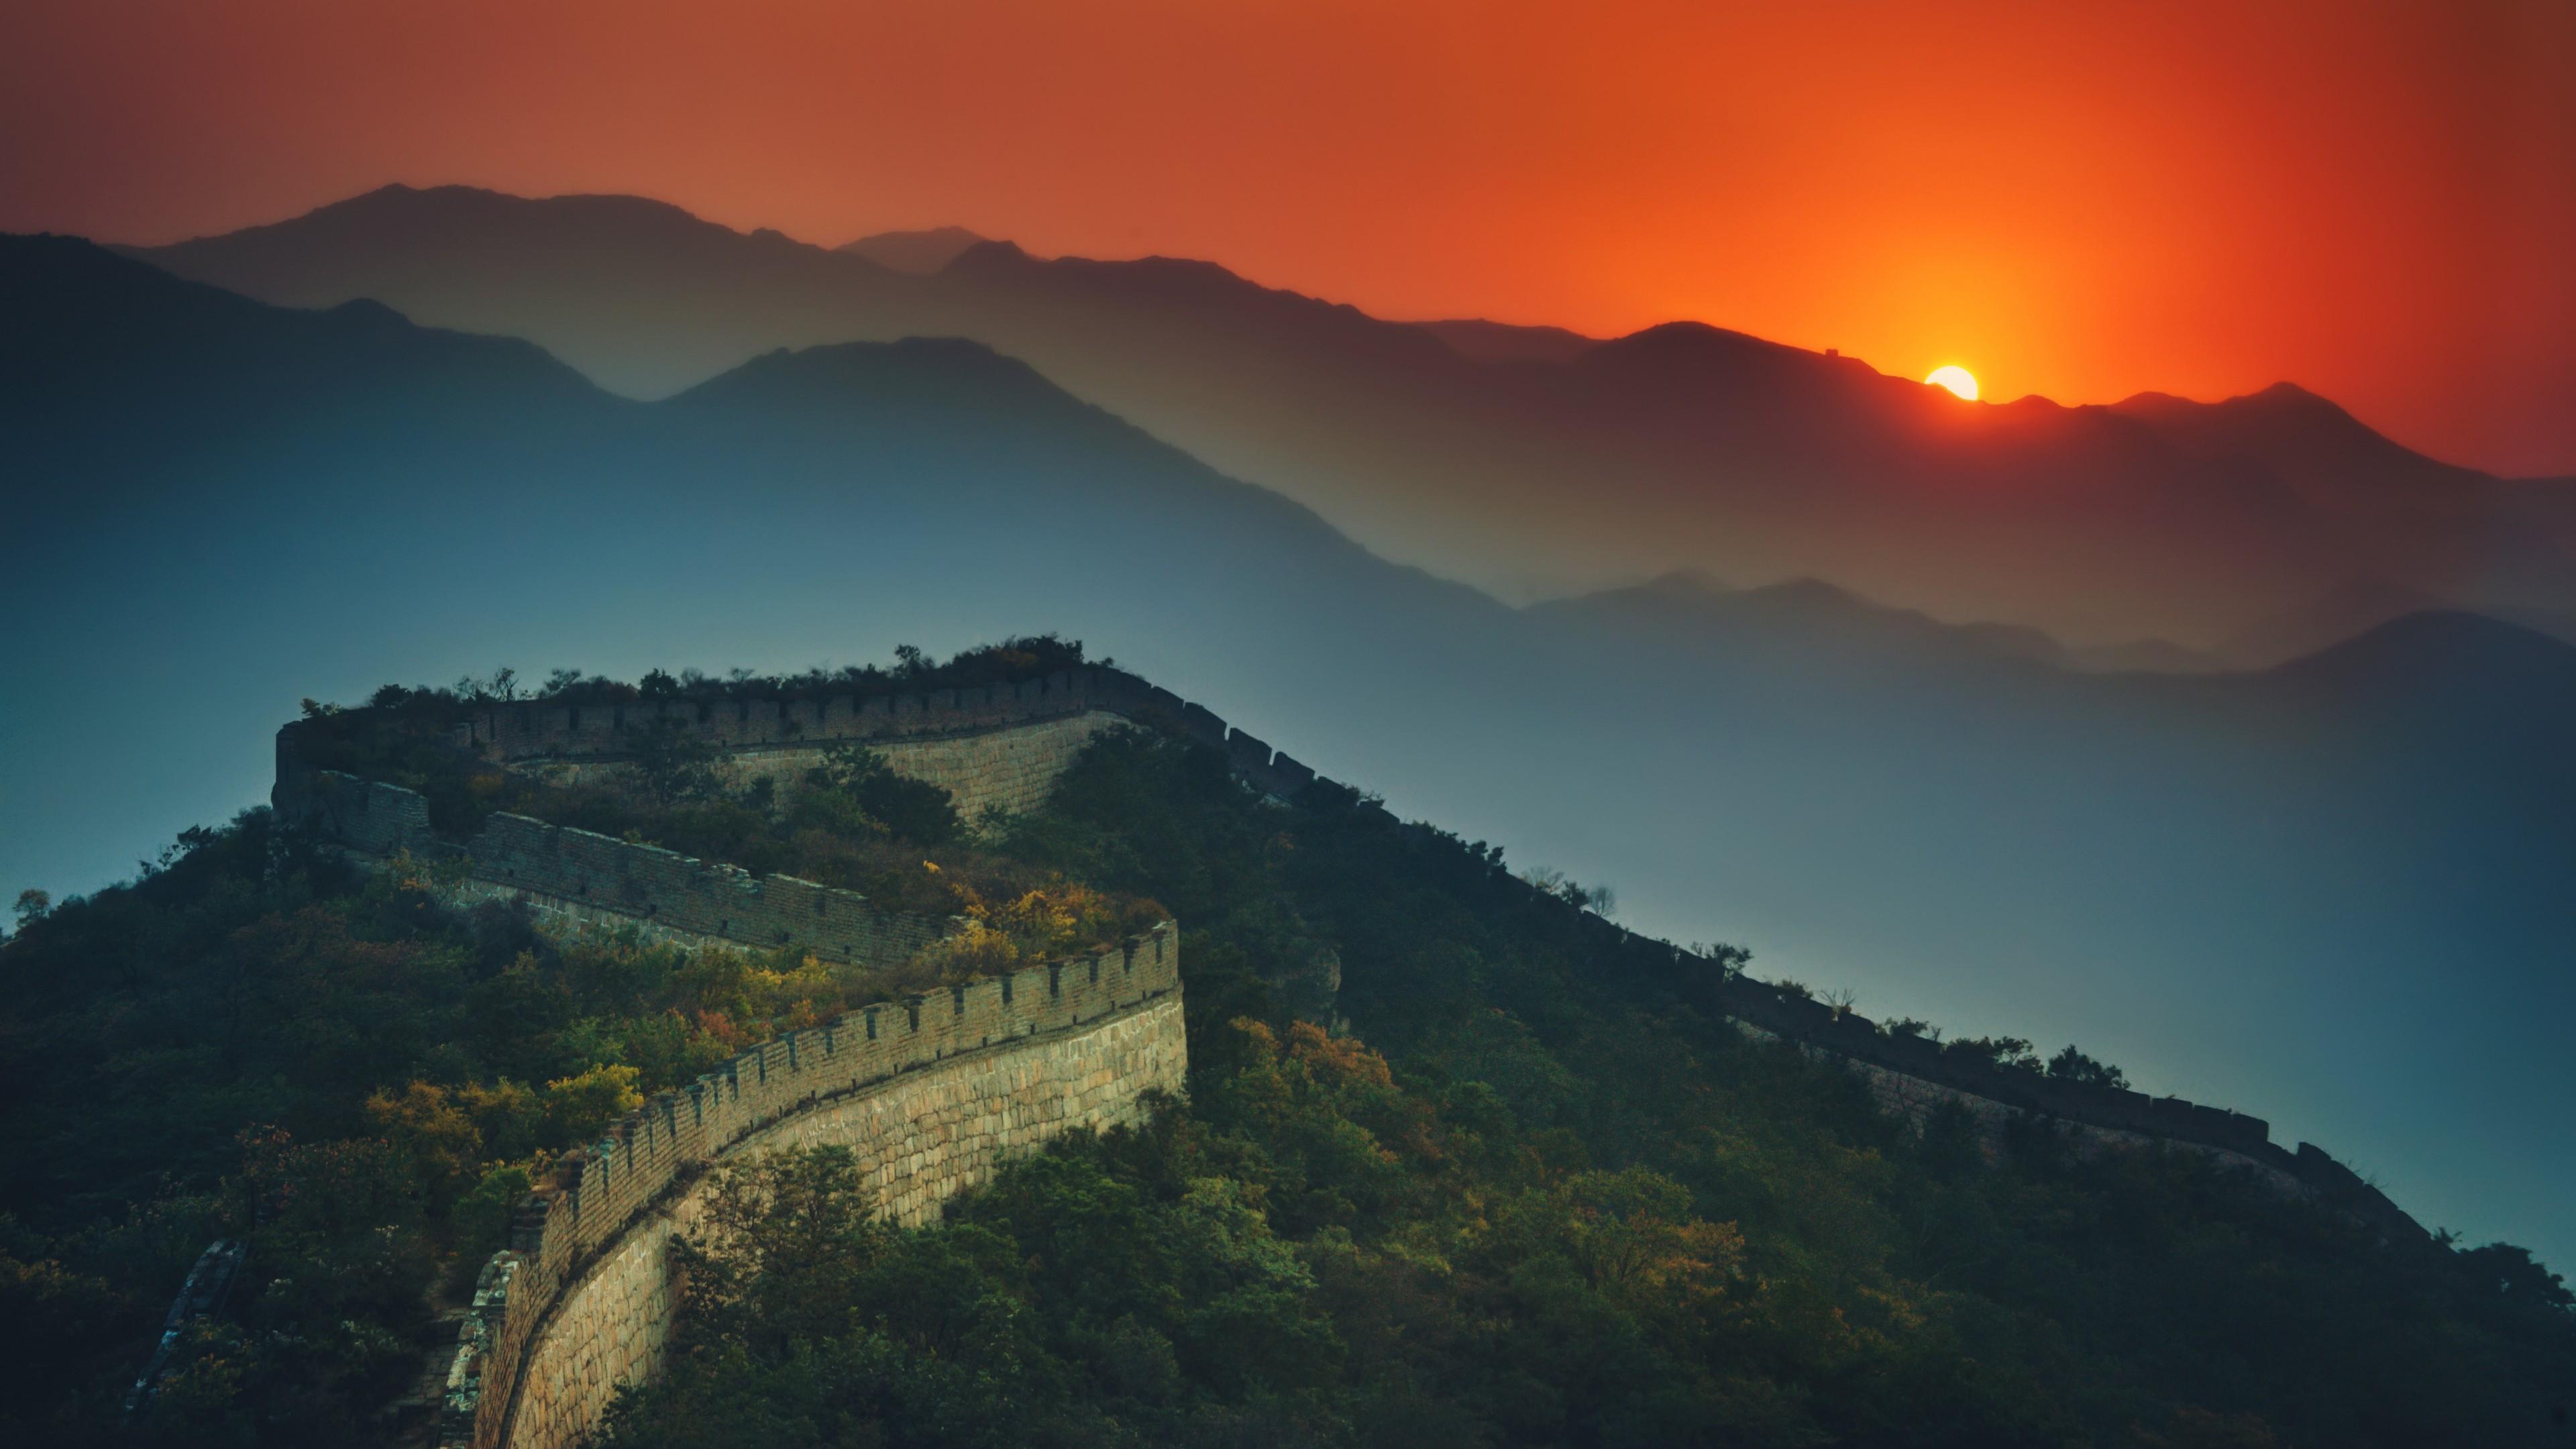 Great Wall Of China At Sunset 4K UltraHD Wallpapers